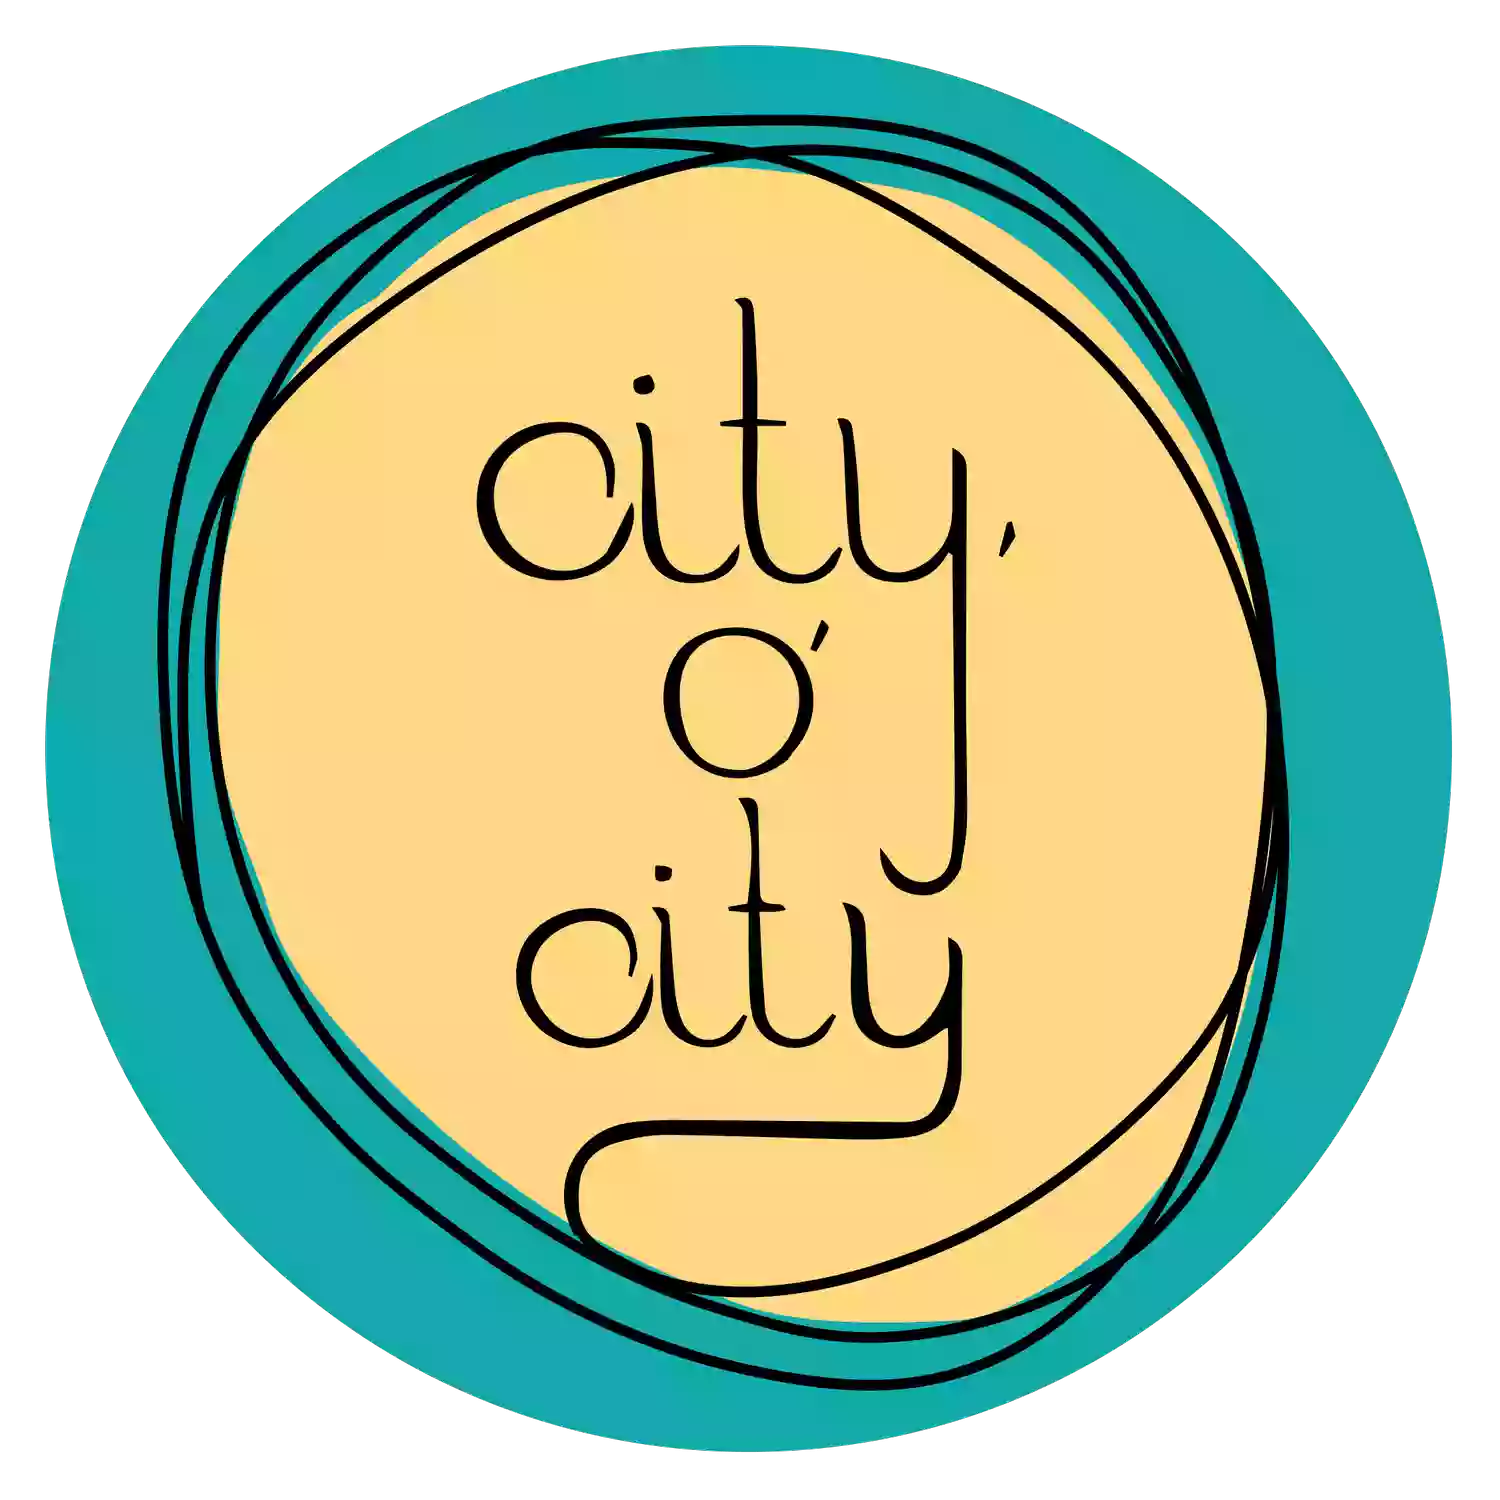 City O' City